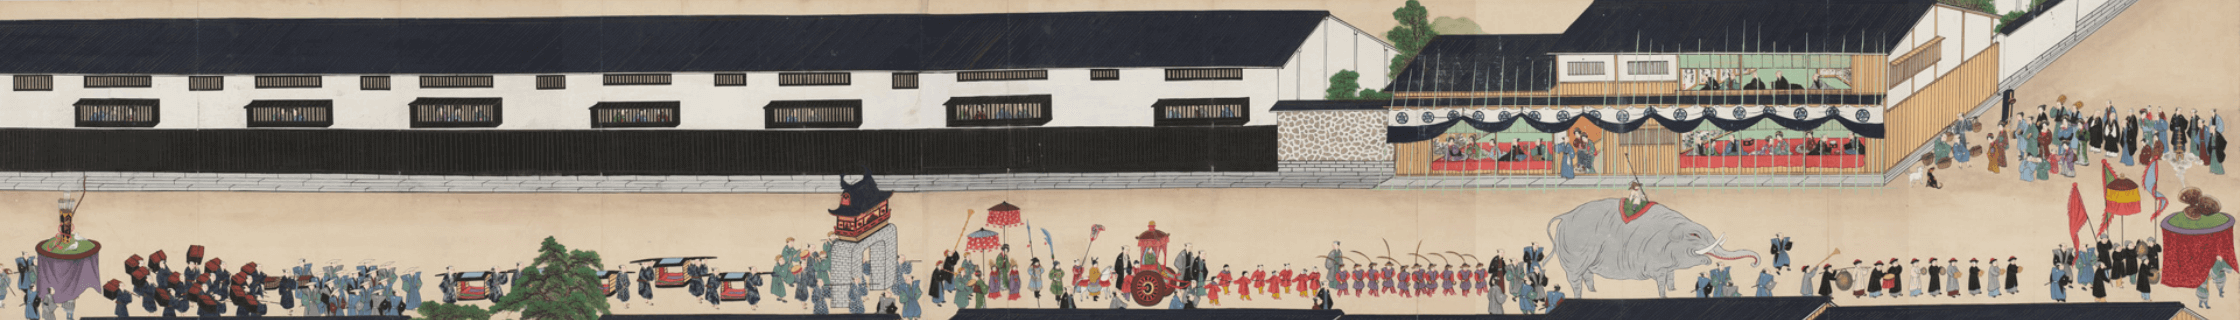 Bức tranh cuộn “Kiyo Suwa Myojin saishiju”, hiện được lưu giữ tại Thư viện Nakanoshima, Osaka.